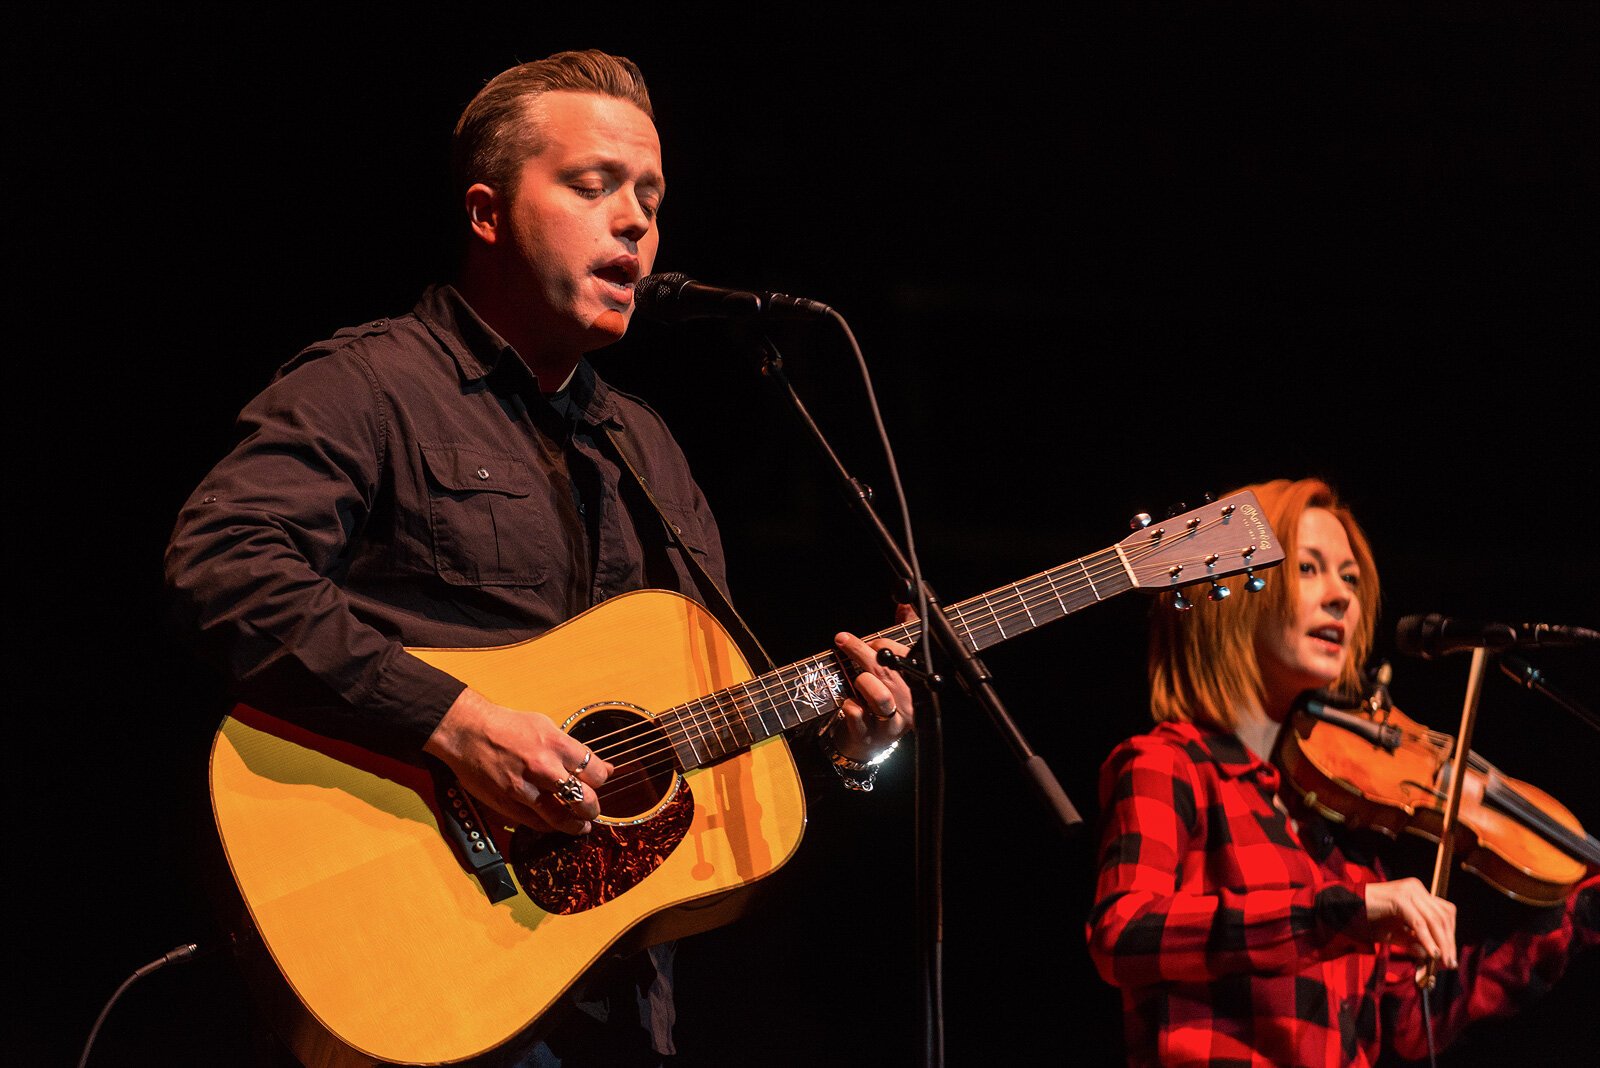 Jason Isbell and Amanda Shires at the 2015 Ann Arbor Folk Festival.